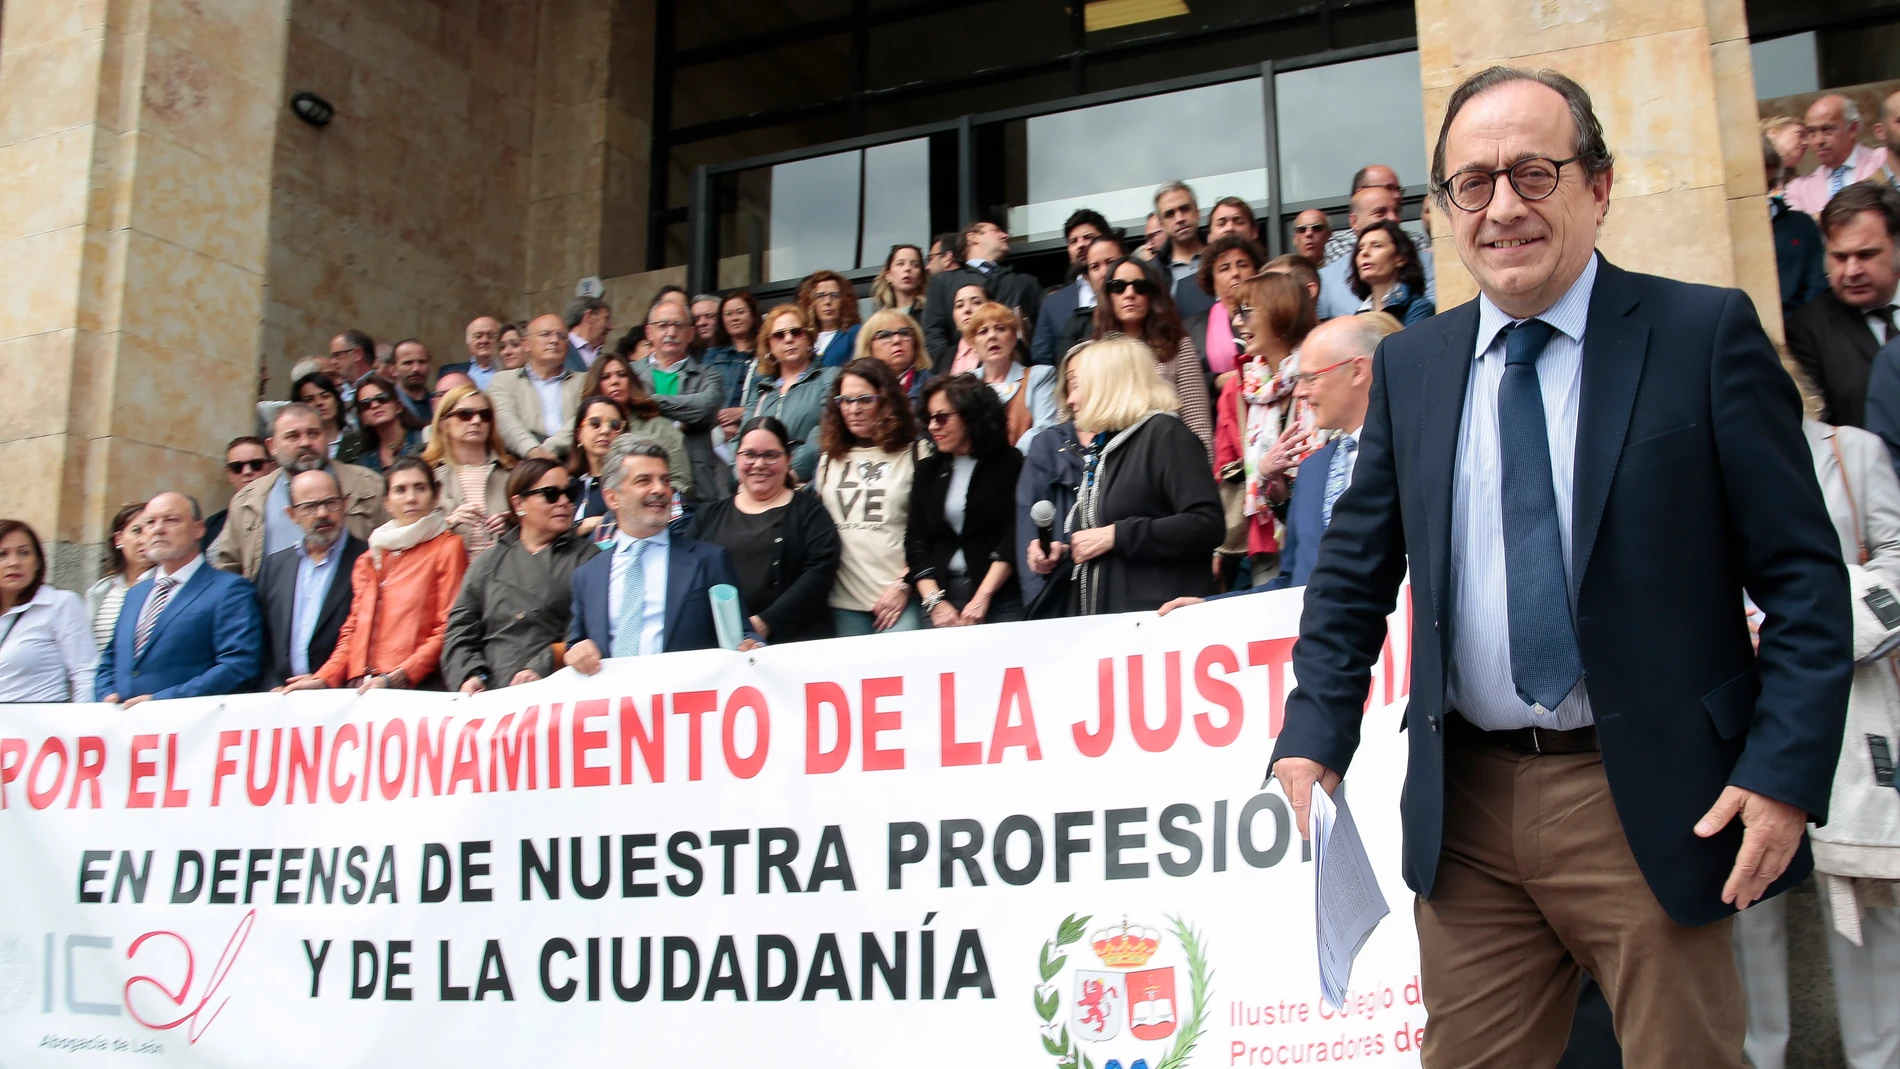 Abogados y procuradores de León protestan en los juzgados de León